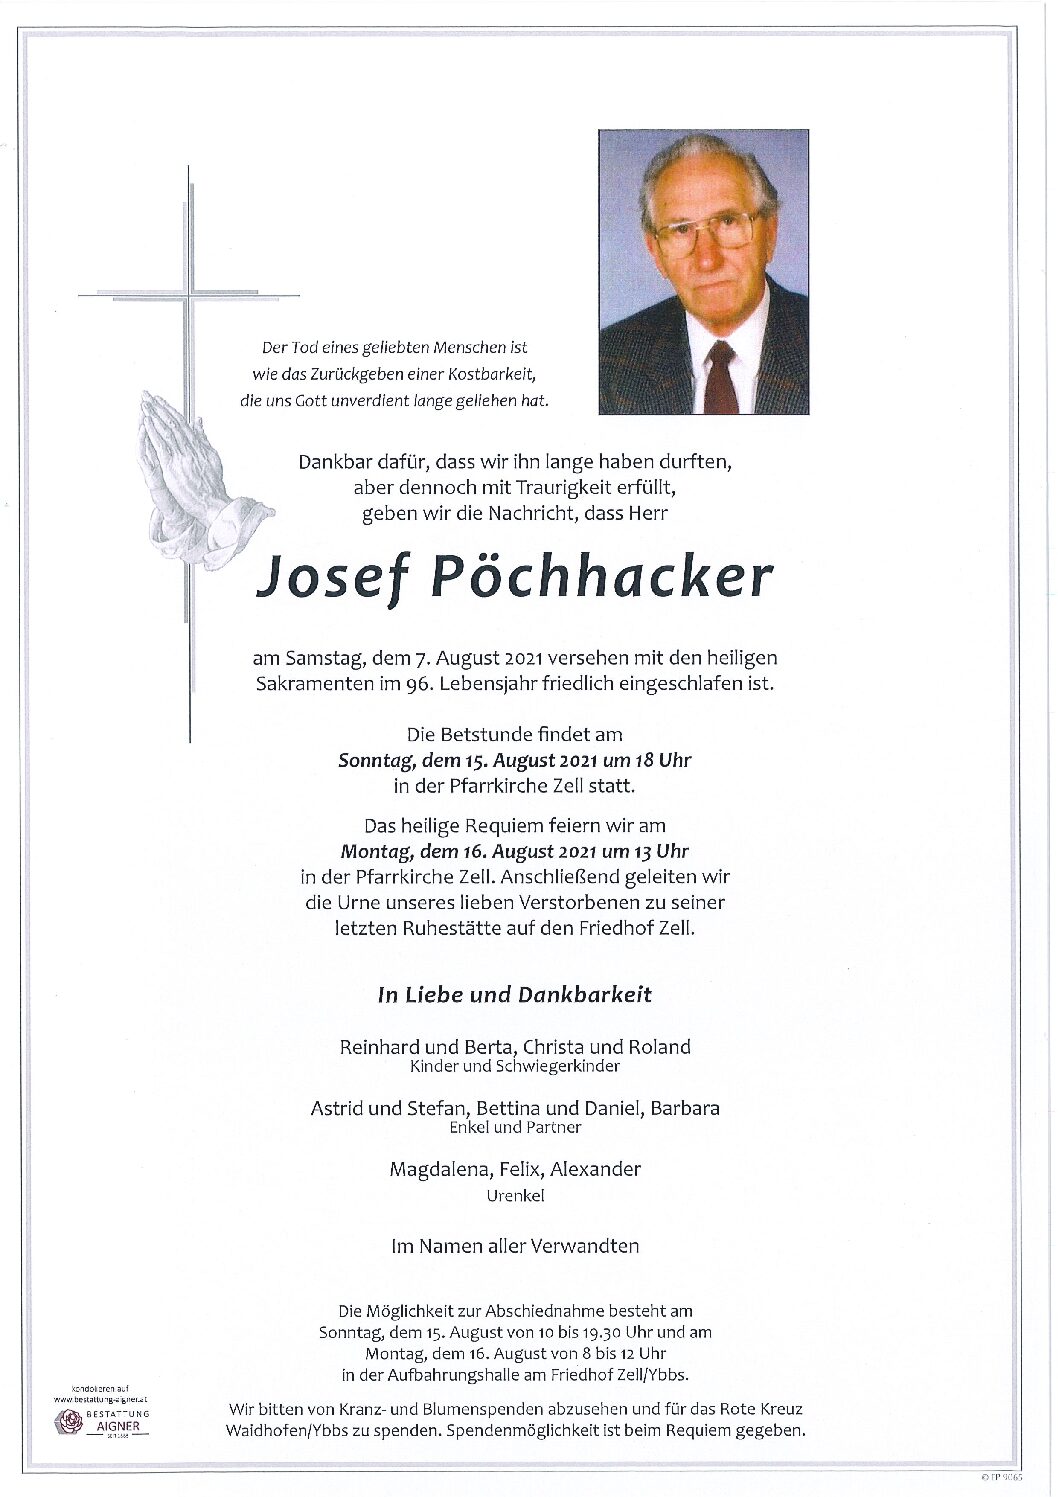 Josef Pöchhacker